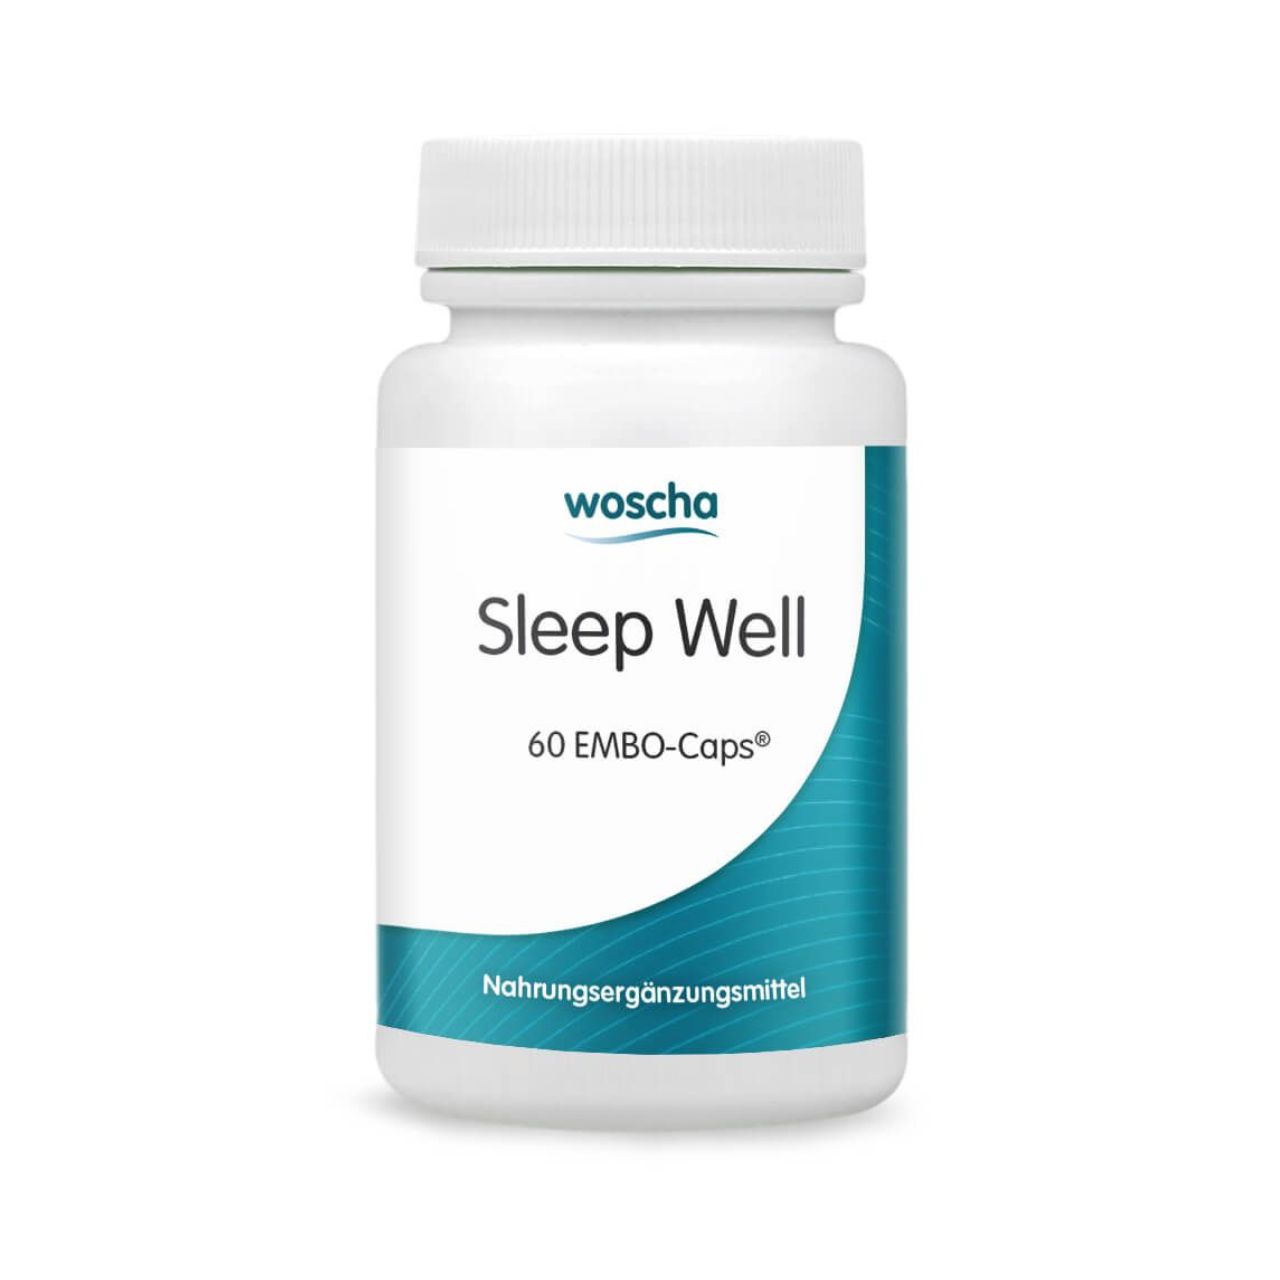 Woscha Sleep Well von podo medi beinhaltet 60 Kapseln